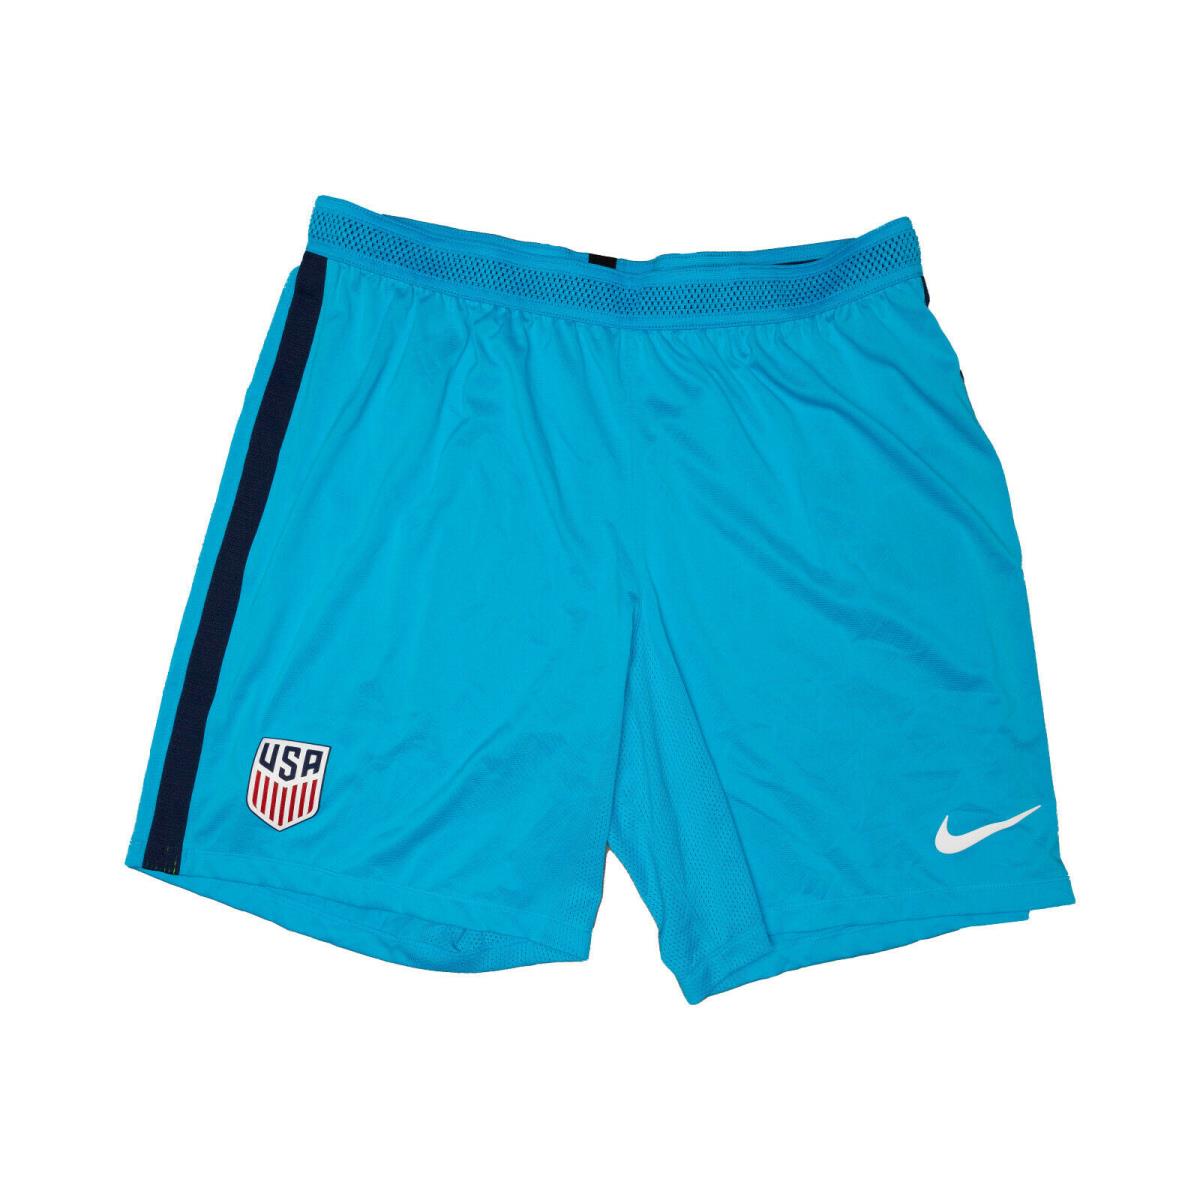 Nike Men Usa Aeroswift Athletic Soccer Shorts Elastic Waist Blue Size Xxl 7413